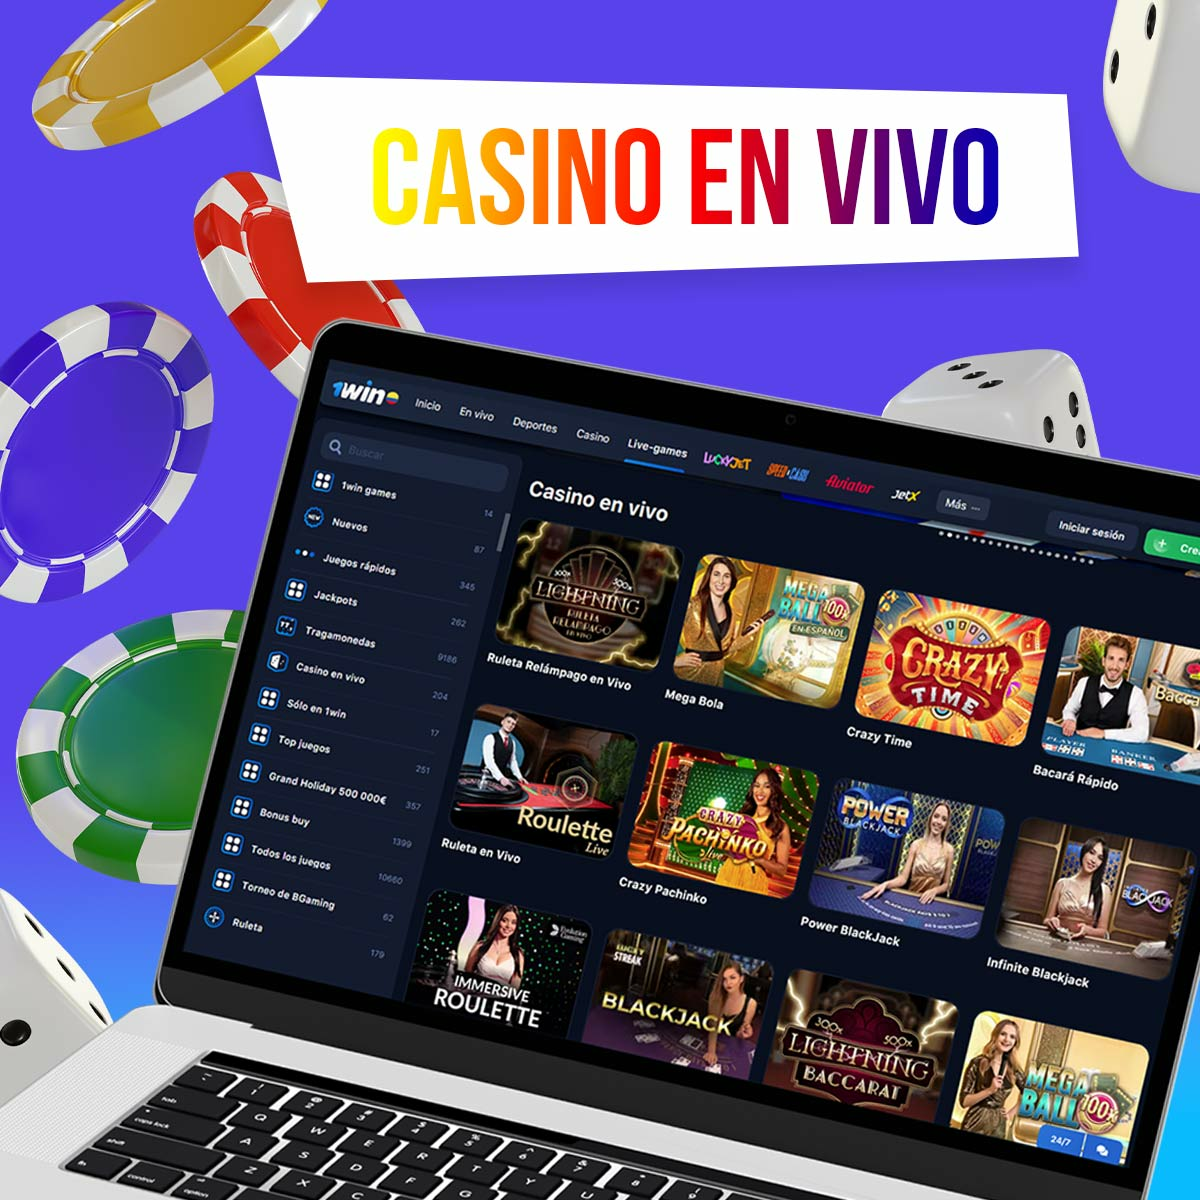 Reseña de los juegos de casino en vivo de 1win en Colombia